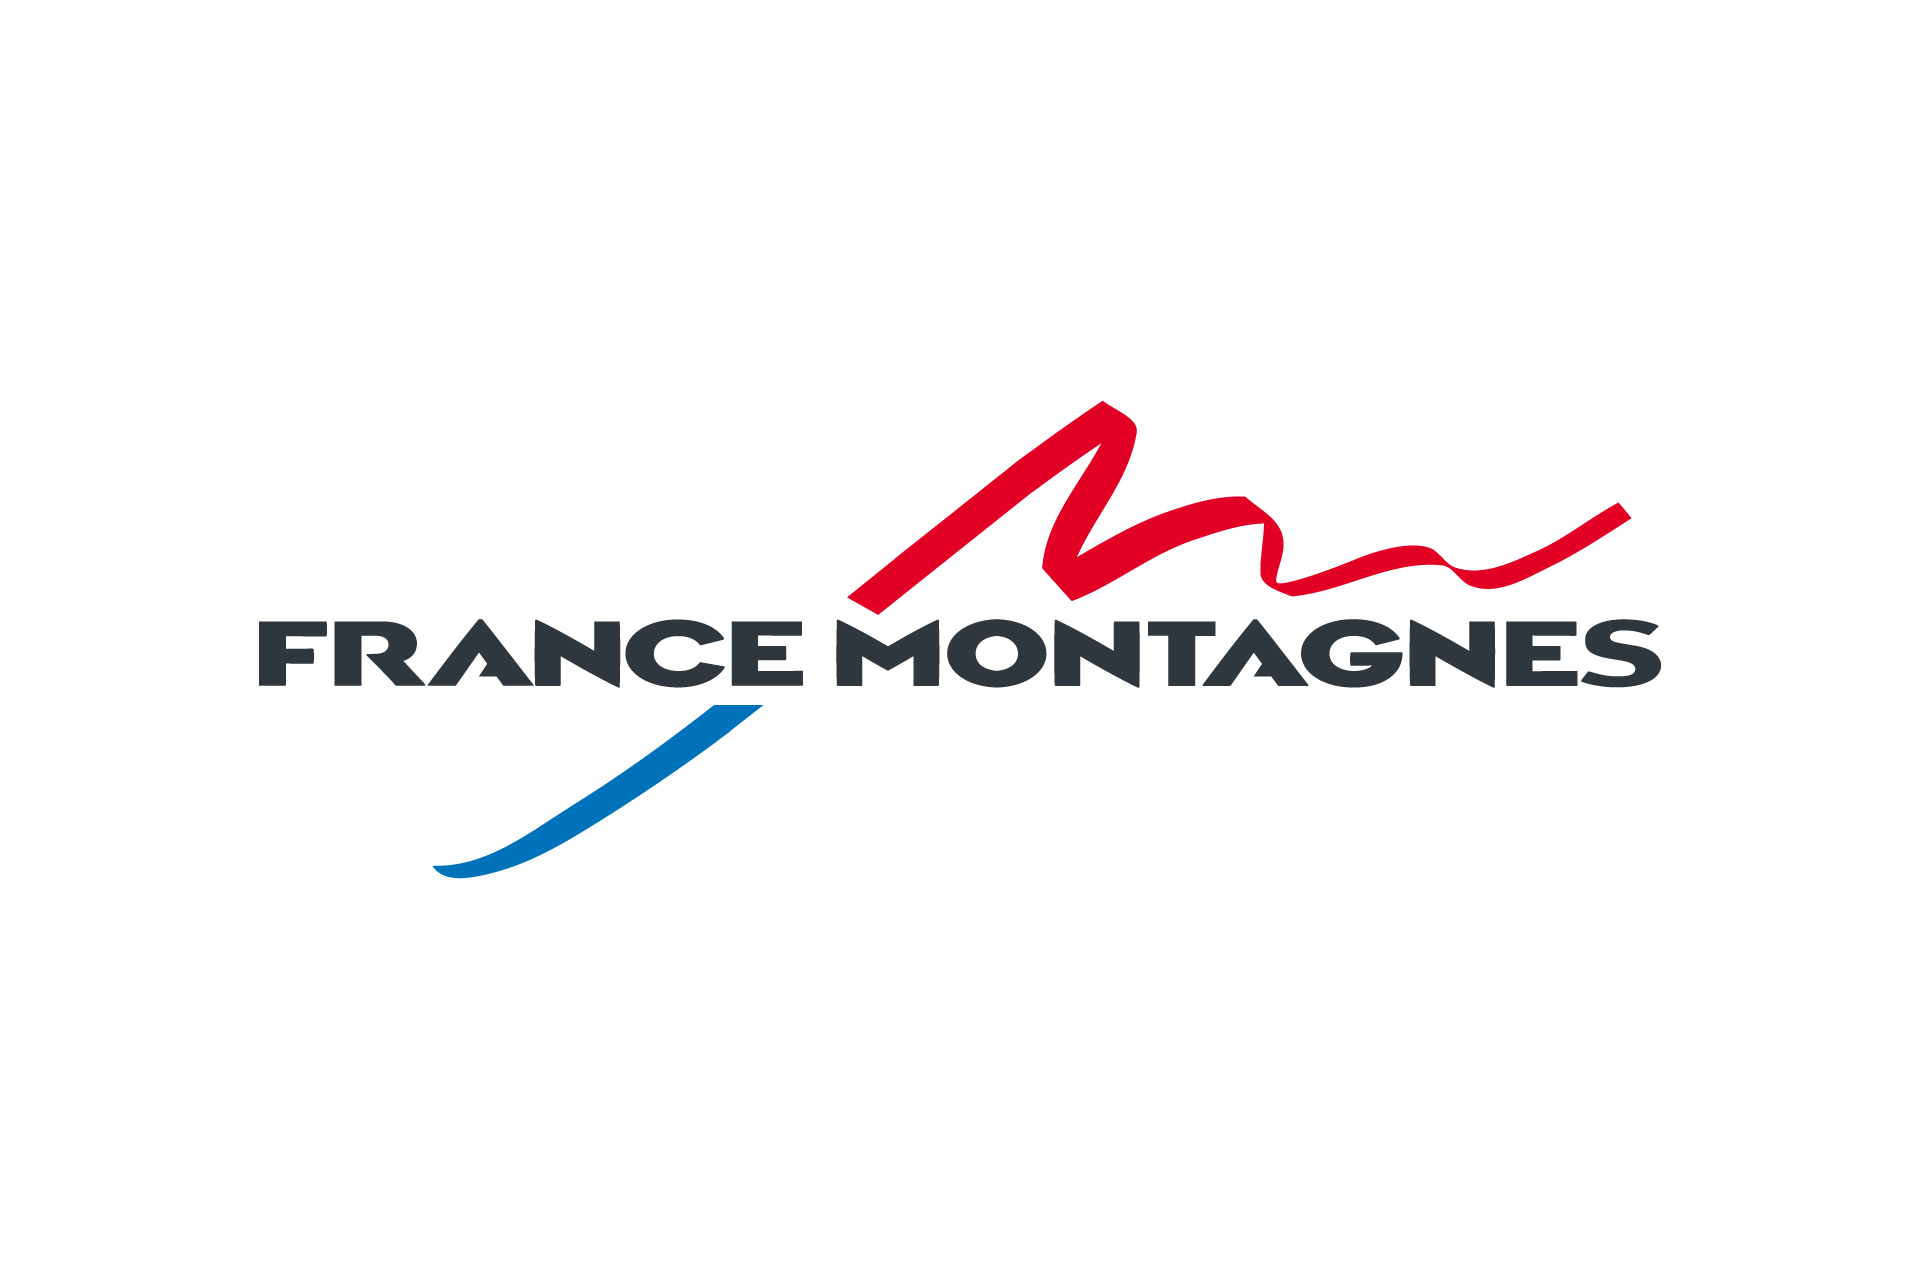 Chamrousse logo partenaire institution france montagnes station ski montagne grenoble isère alpes france - © France montagnes 